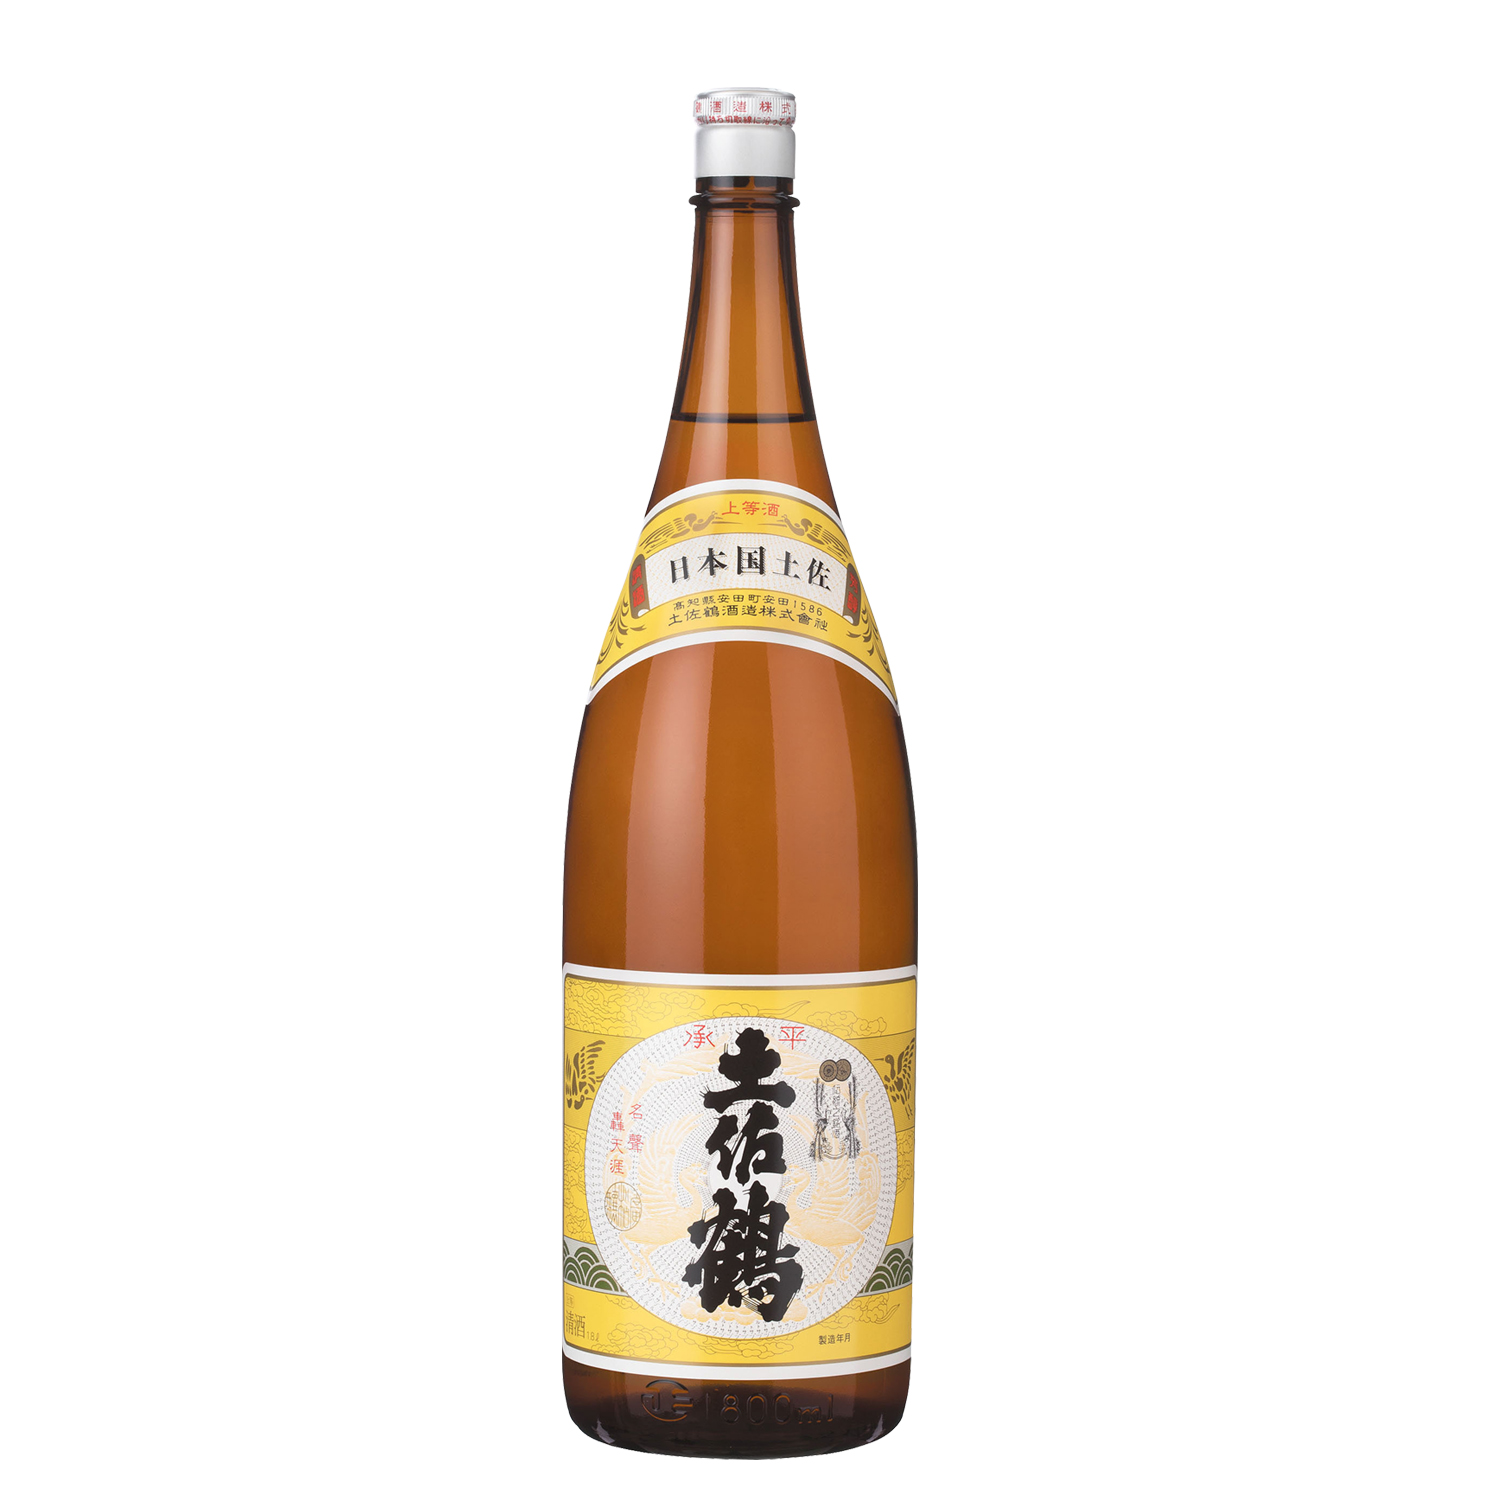 土佐鶴酒造の日本酒